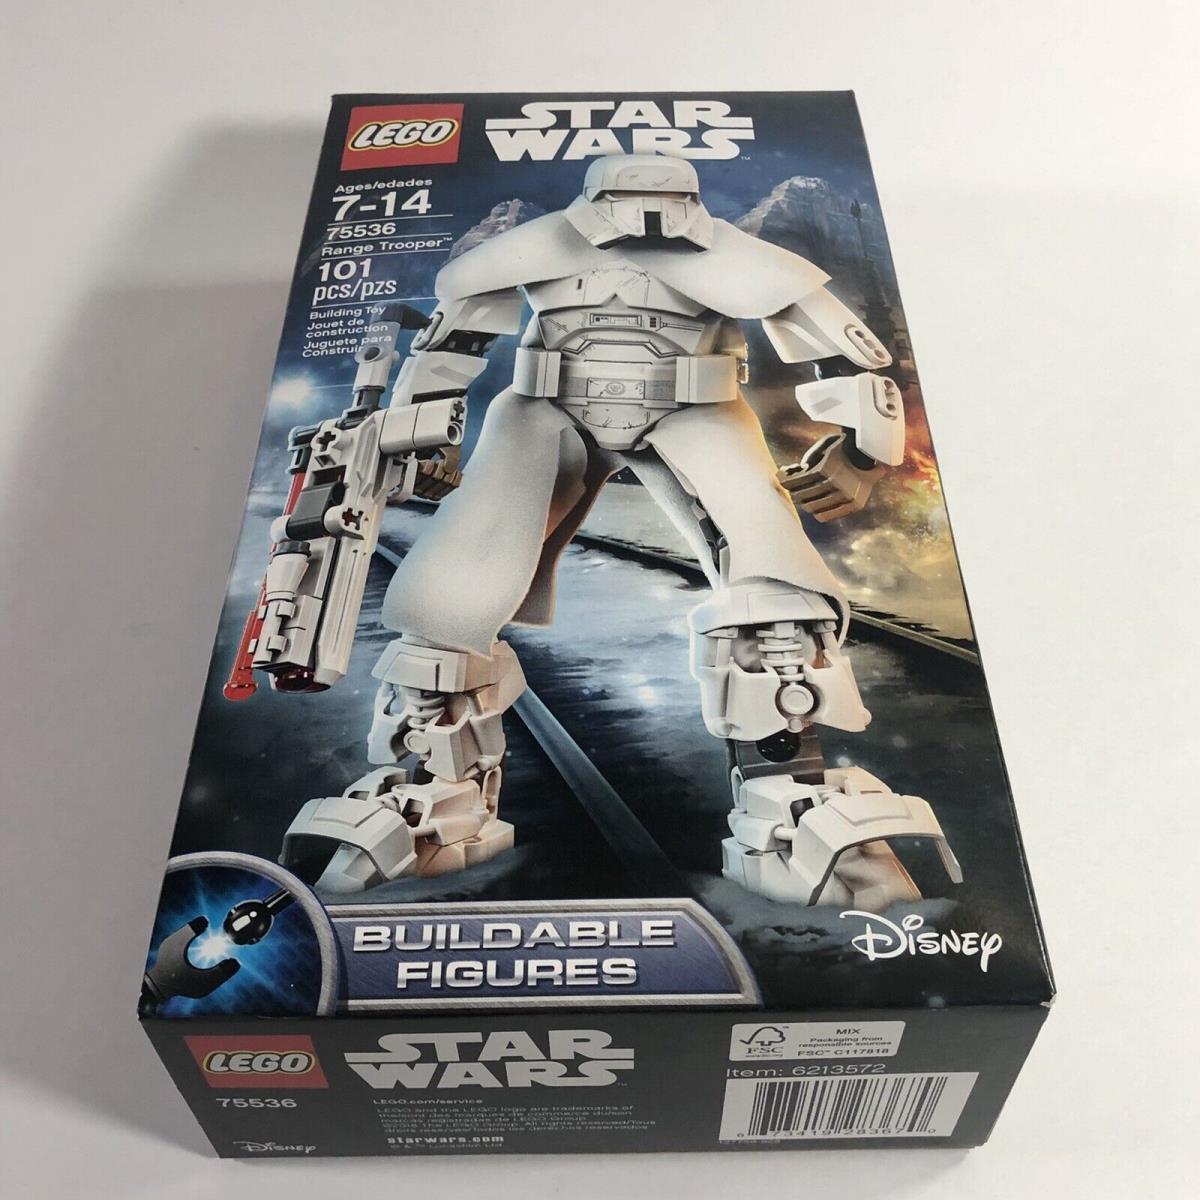 Lego Star Wars Range Trooper 75536 Solo A Star Wars Story Retired